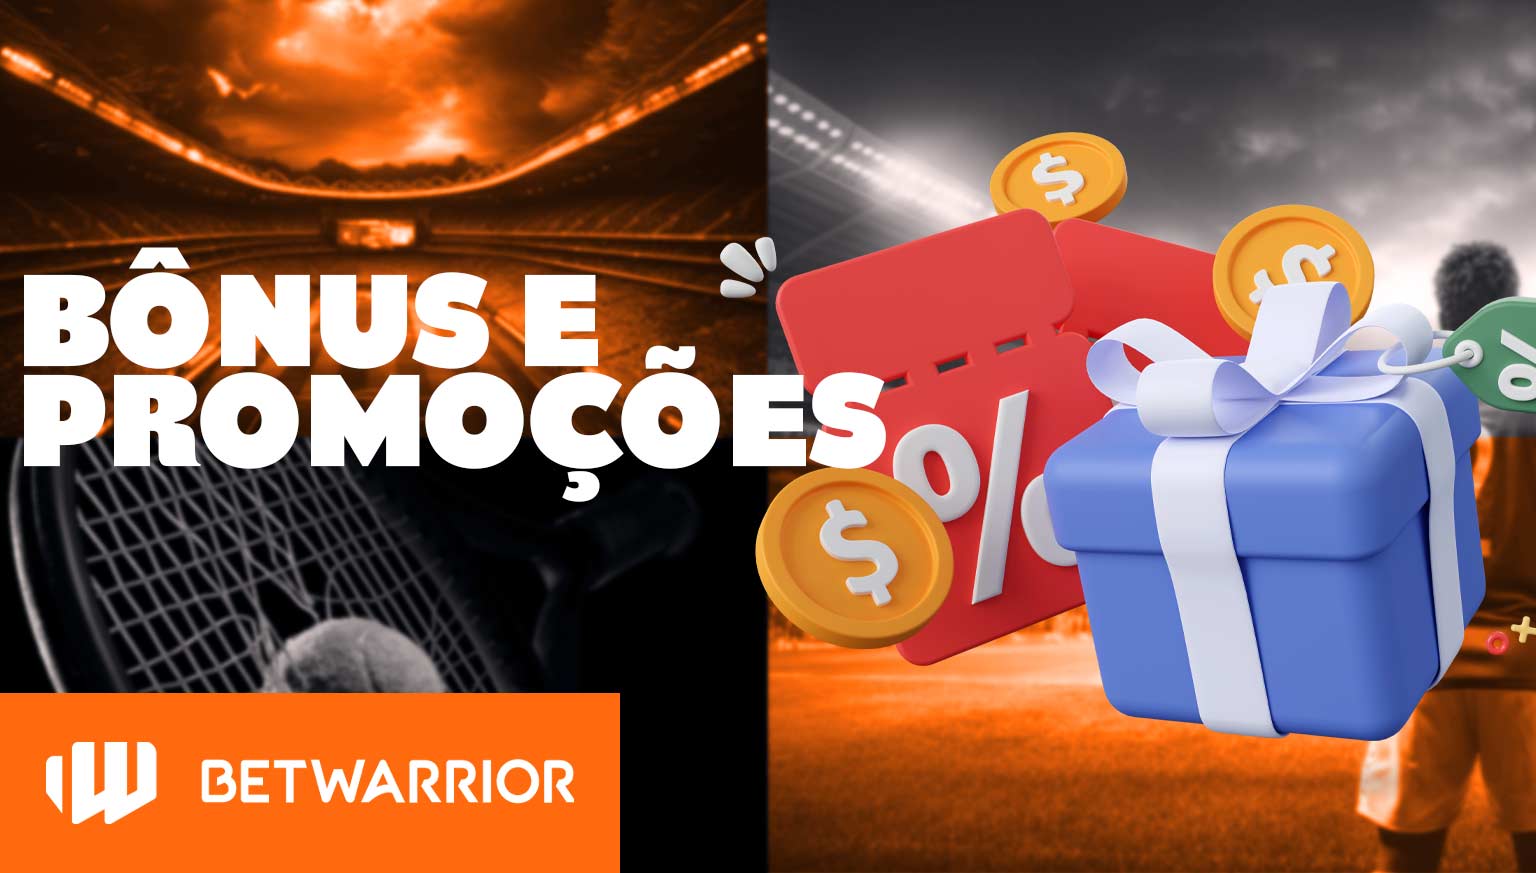 BetWarrior oferece bônus generosos e promoções agradáveis para jogadores brasileiros.